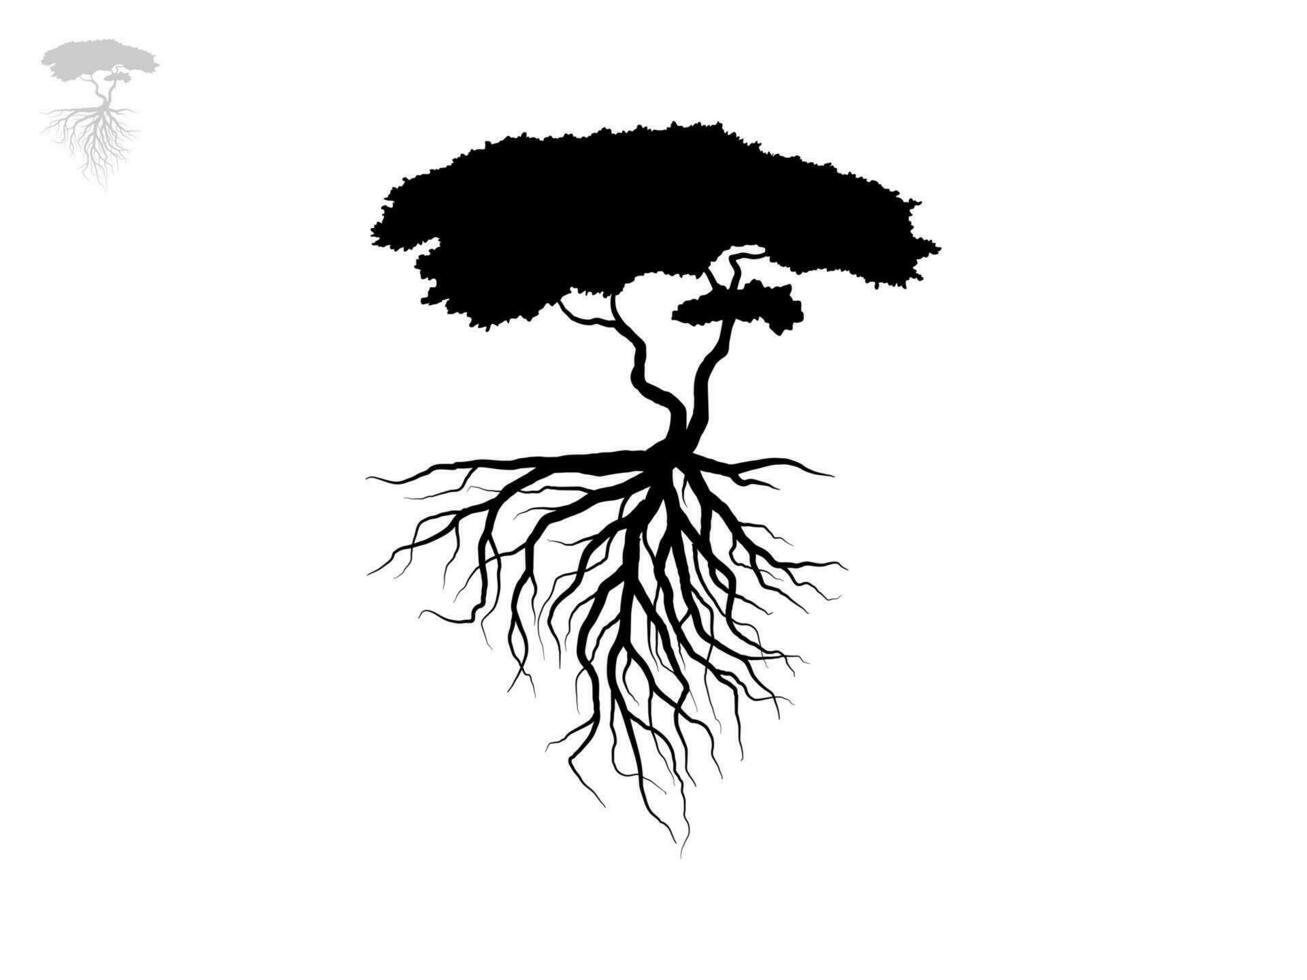 arbre de branche noire ou silhouettes d'arbres nus. illustrations isolées dessinées à la main. vecteur